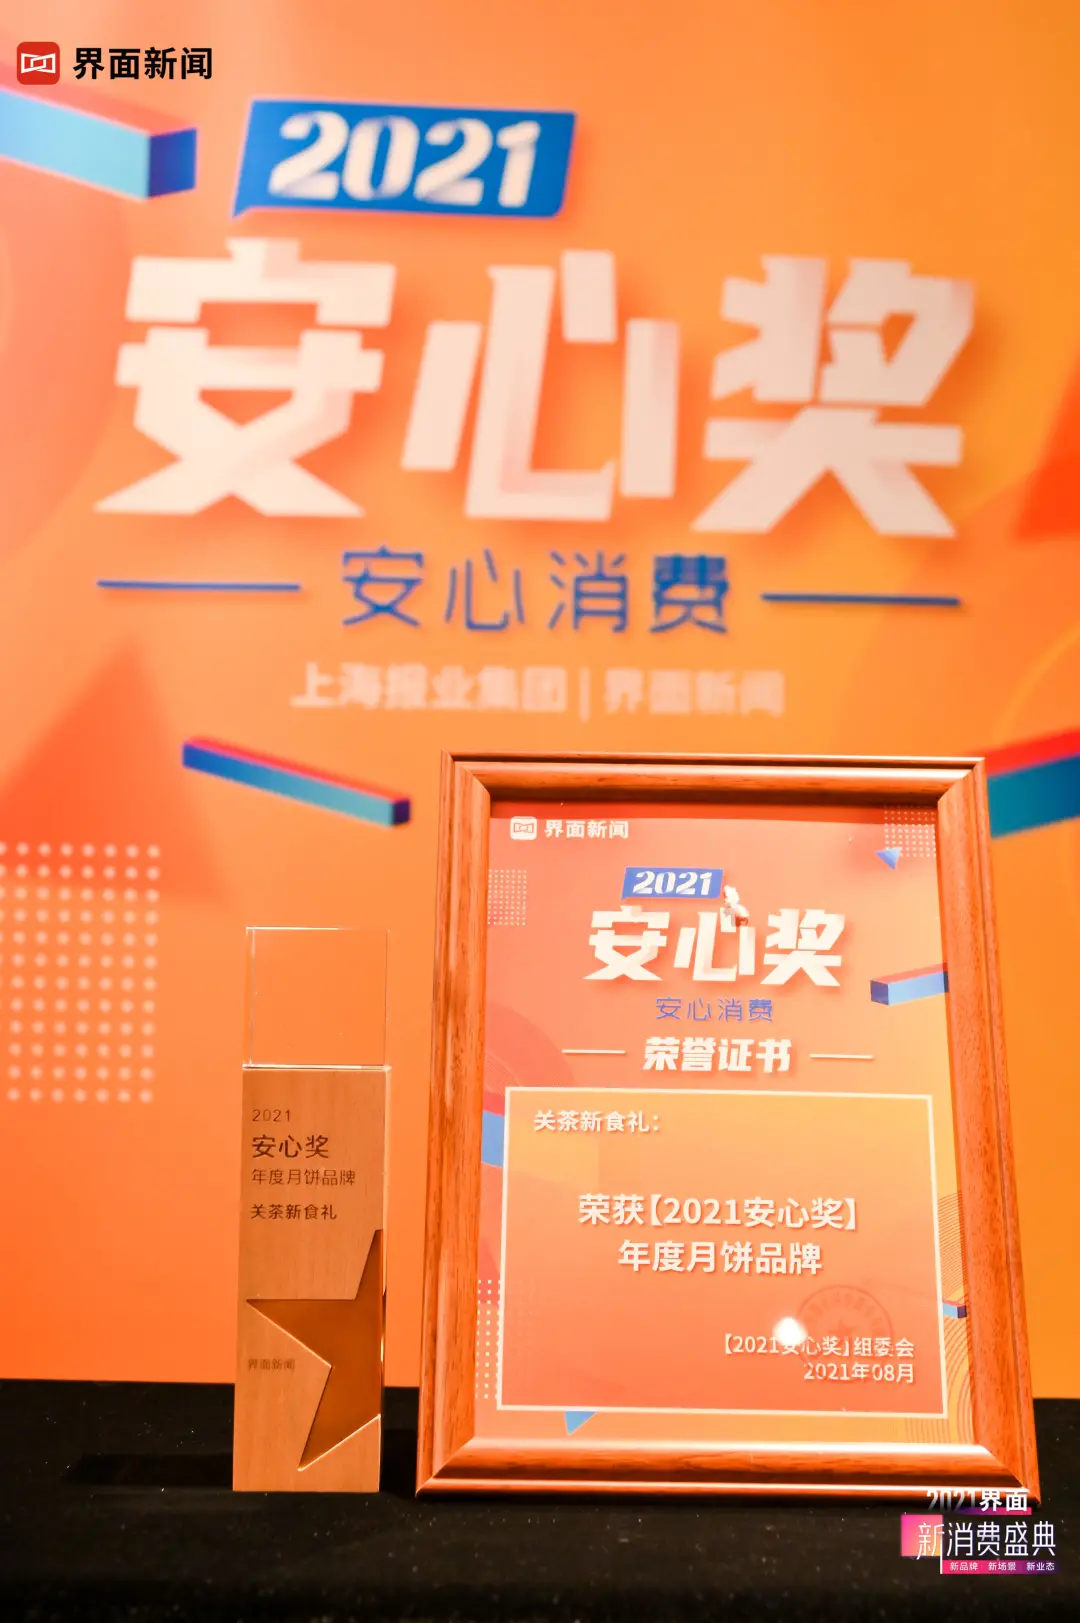 关茶新食礼荣获「2021安心奖」年度月饼品牌